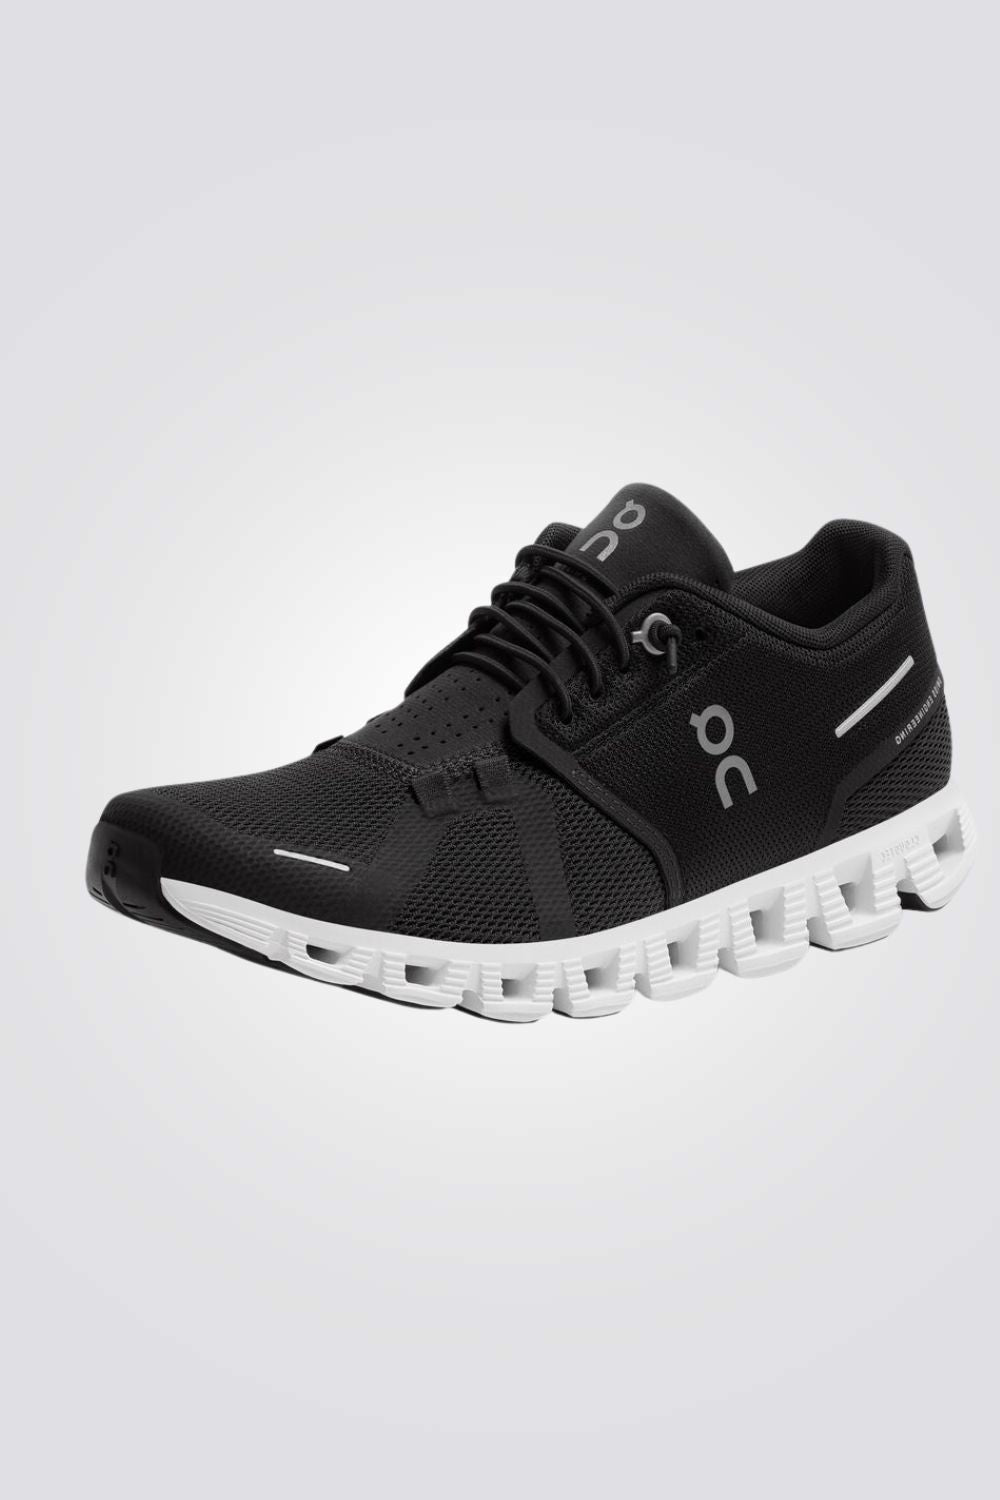 נעלי ספורט לנשים Cloud 5 בצבע שחור ולבן